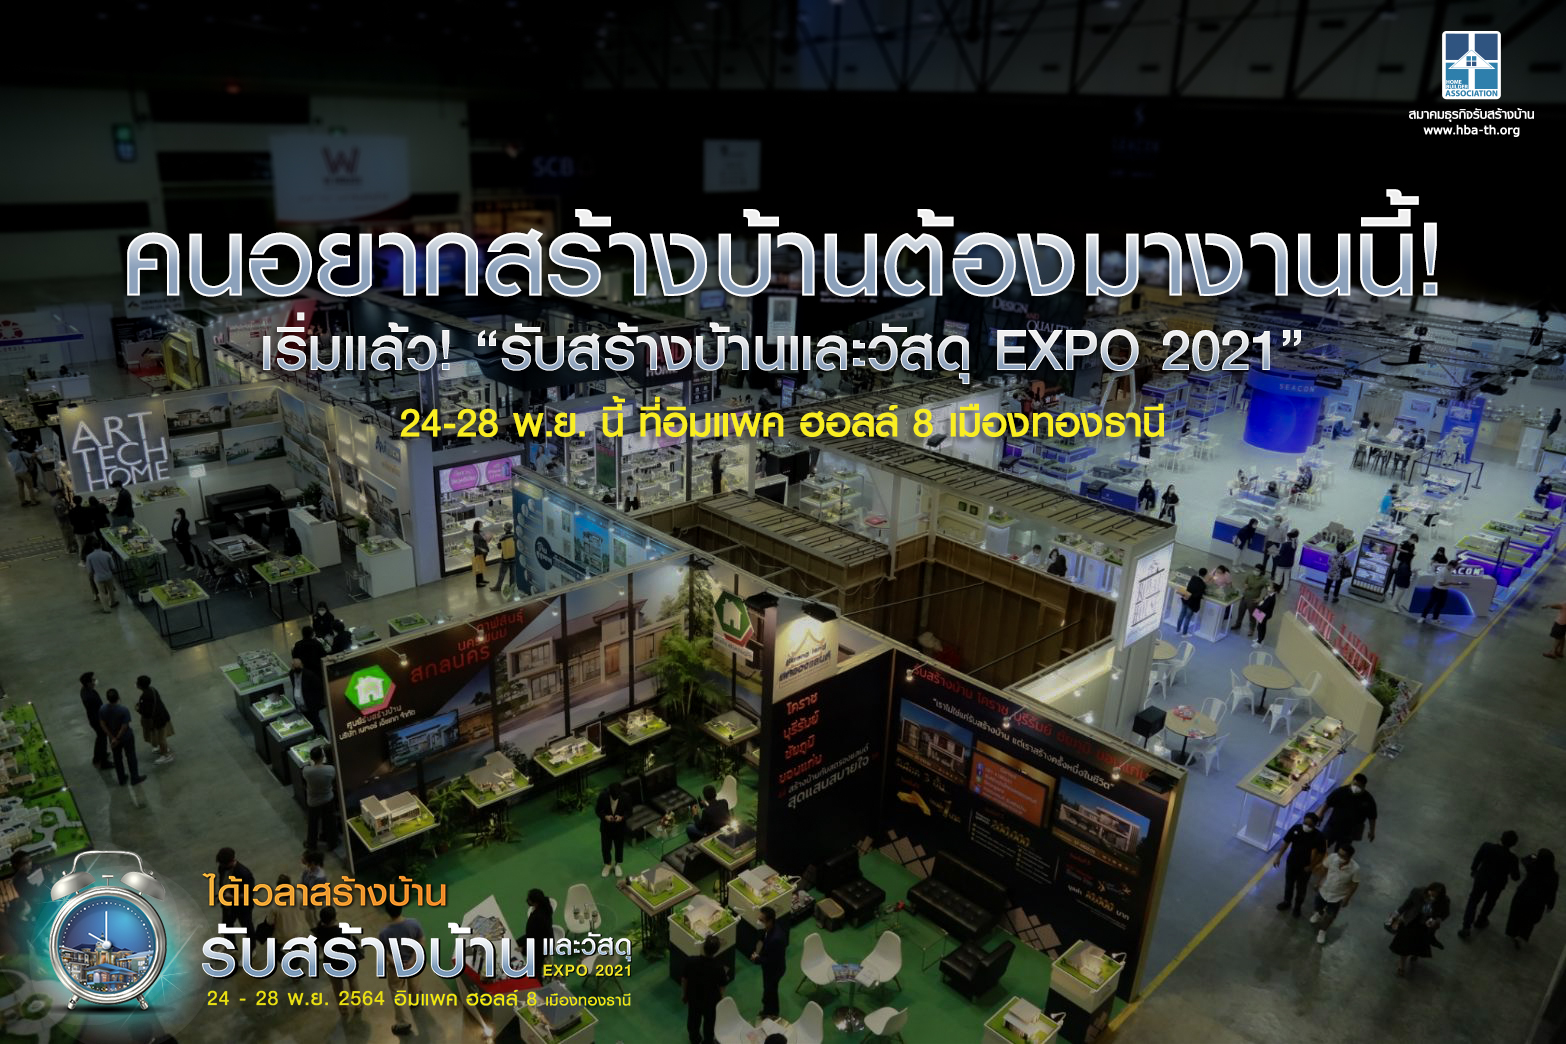 ประชุมใหญ่สามัญสมาชิกสภาหอการค้าแห่งประเทศไทย ครั้งที่ 52 ประจำปี 2562